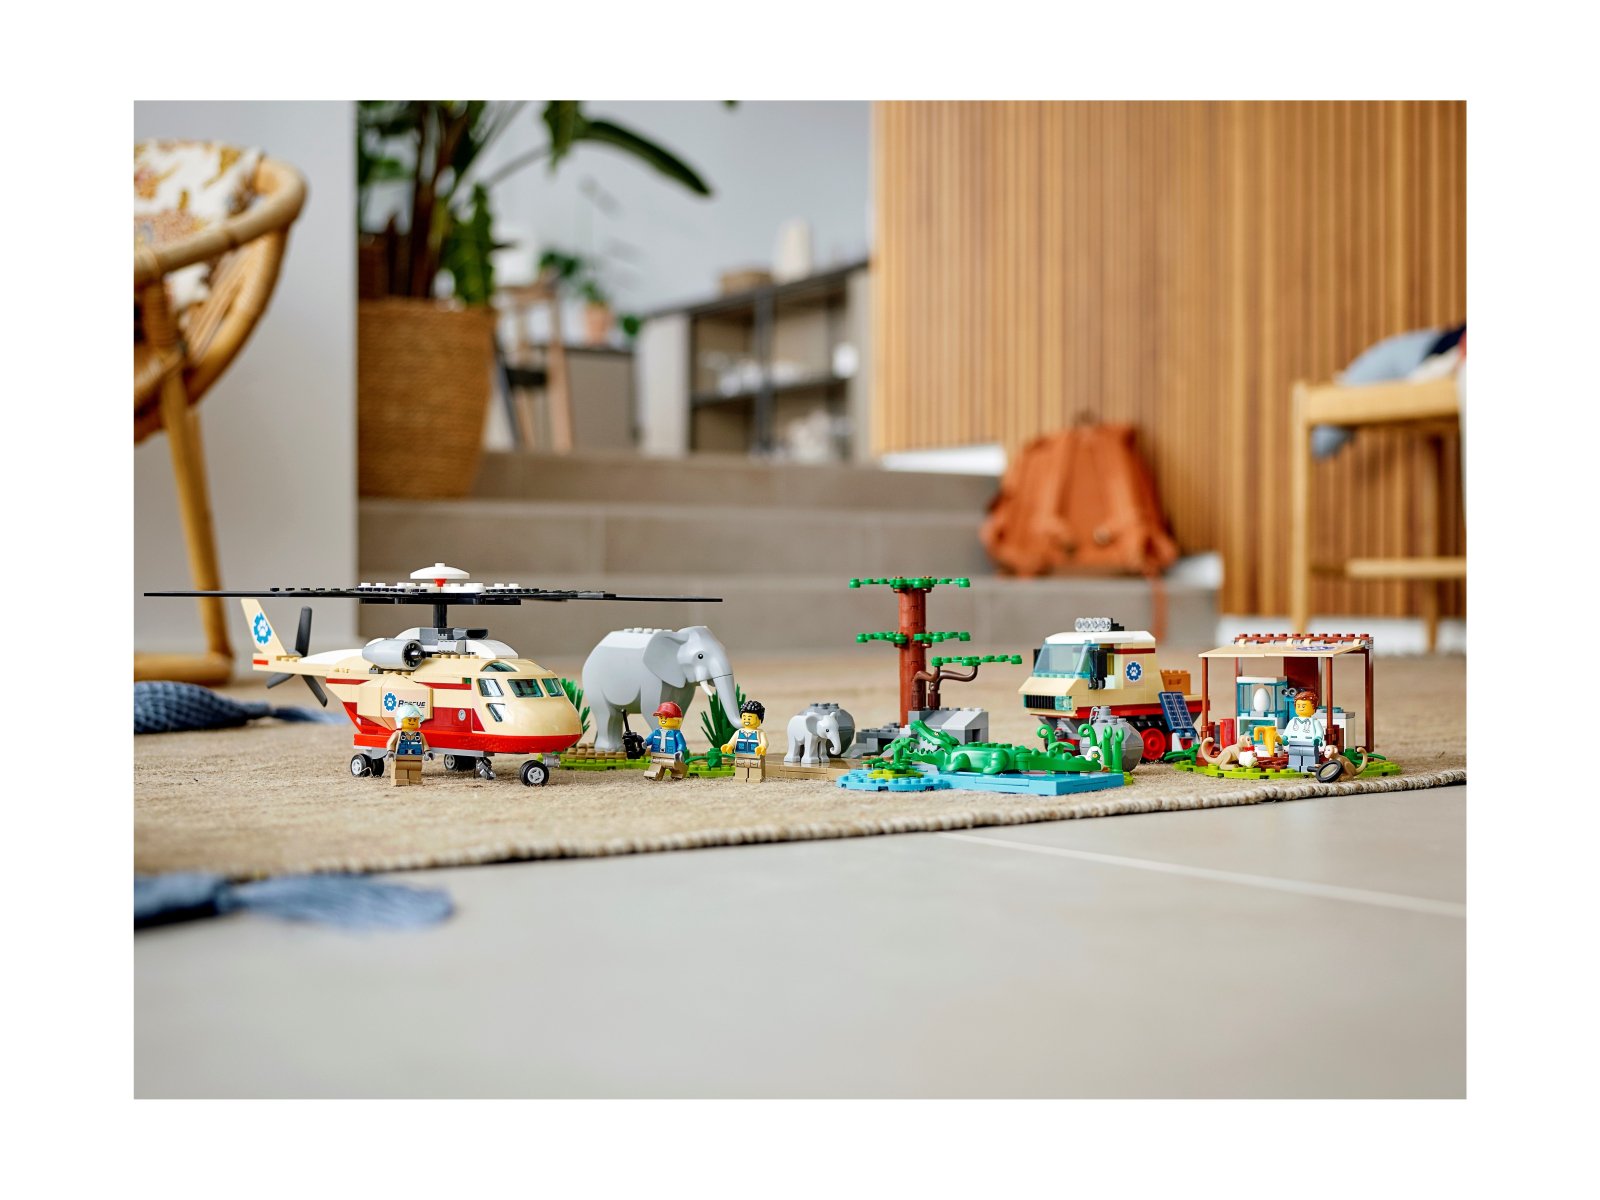 LEGO 60302 City Na ratunek dzikim zwierzętom